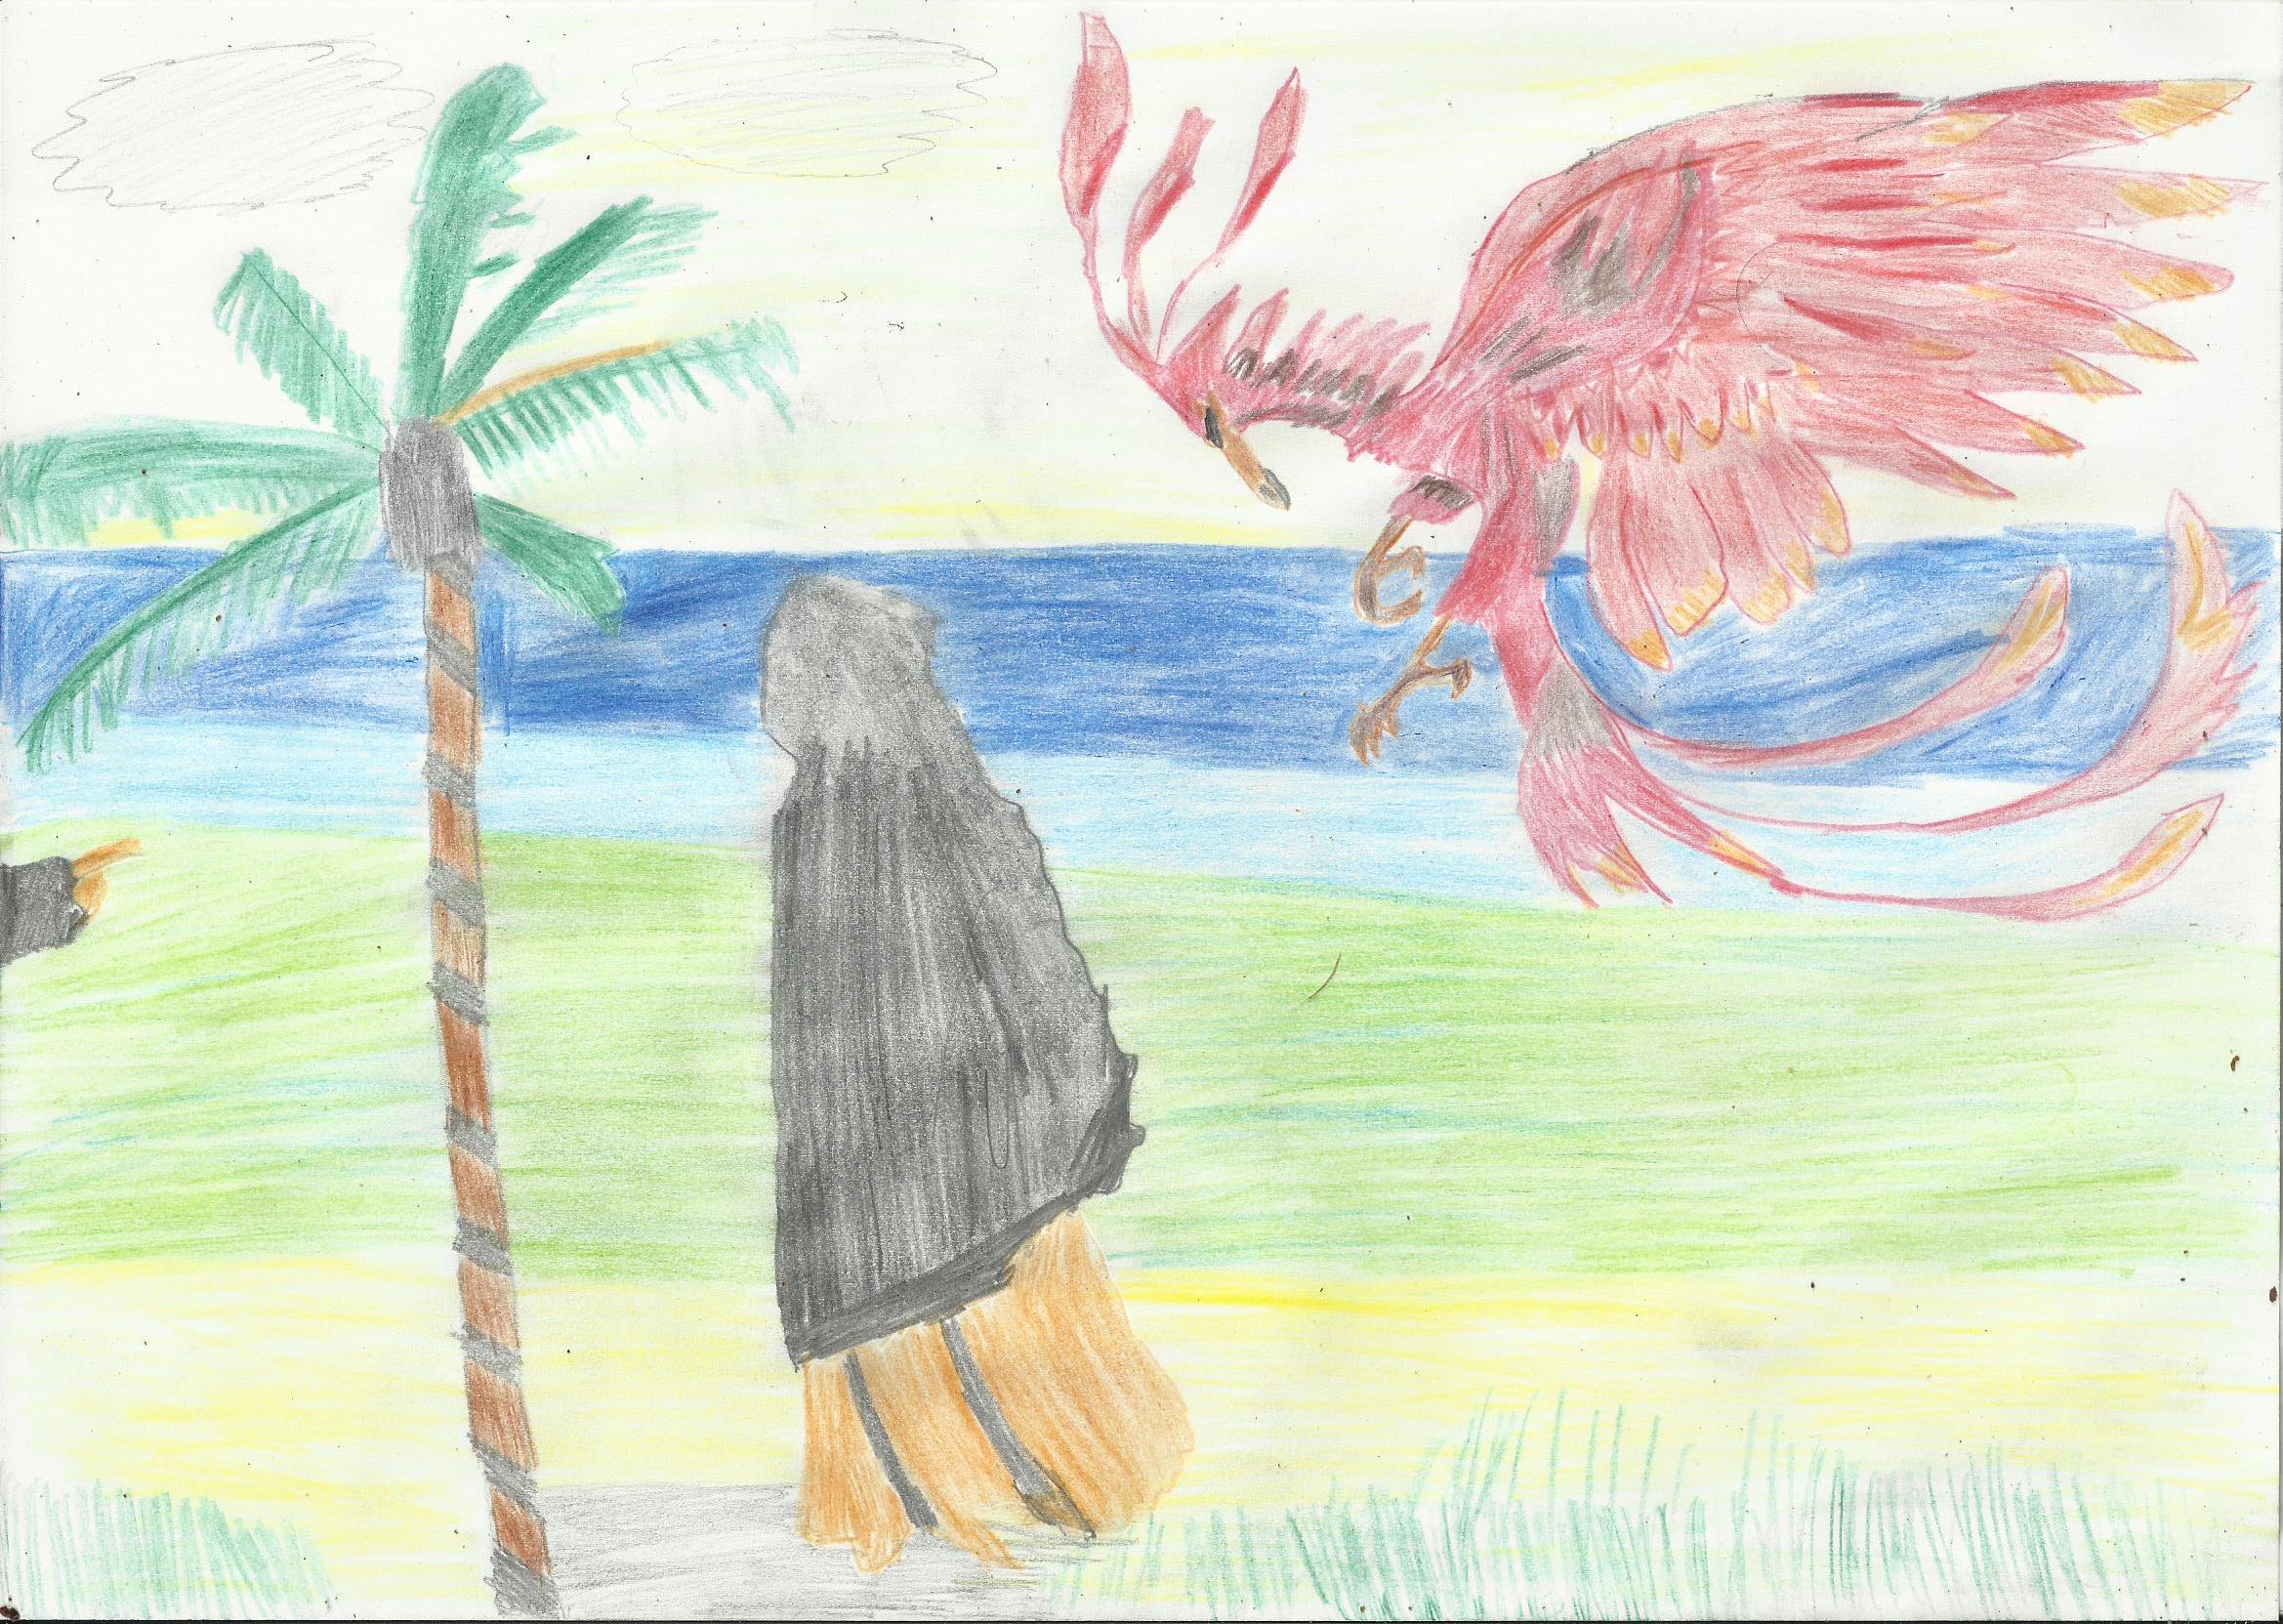 Vor einem leuchtenden Himmel, der in einen strahlend blauen Fluss übergeht, steht links am Wegesrand eine hohe Palme. Von rechts senkt sich ein großer, rot-gelber Phönix aus dem Flug herab auf eine schwarz gekleidete Person.